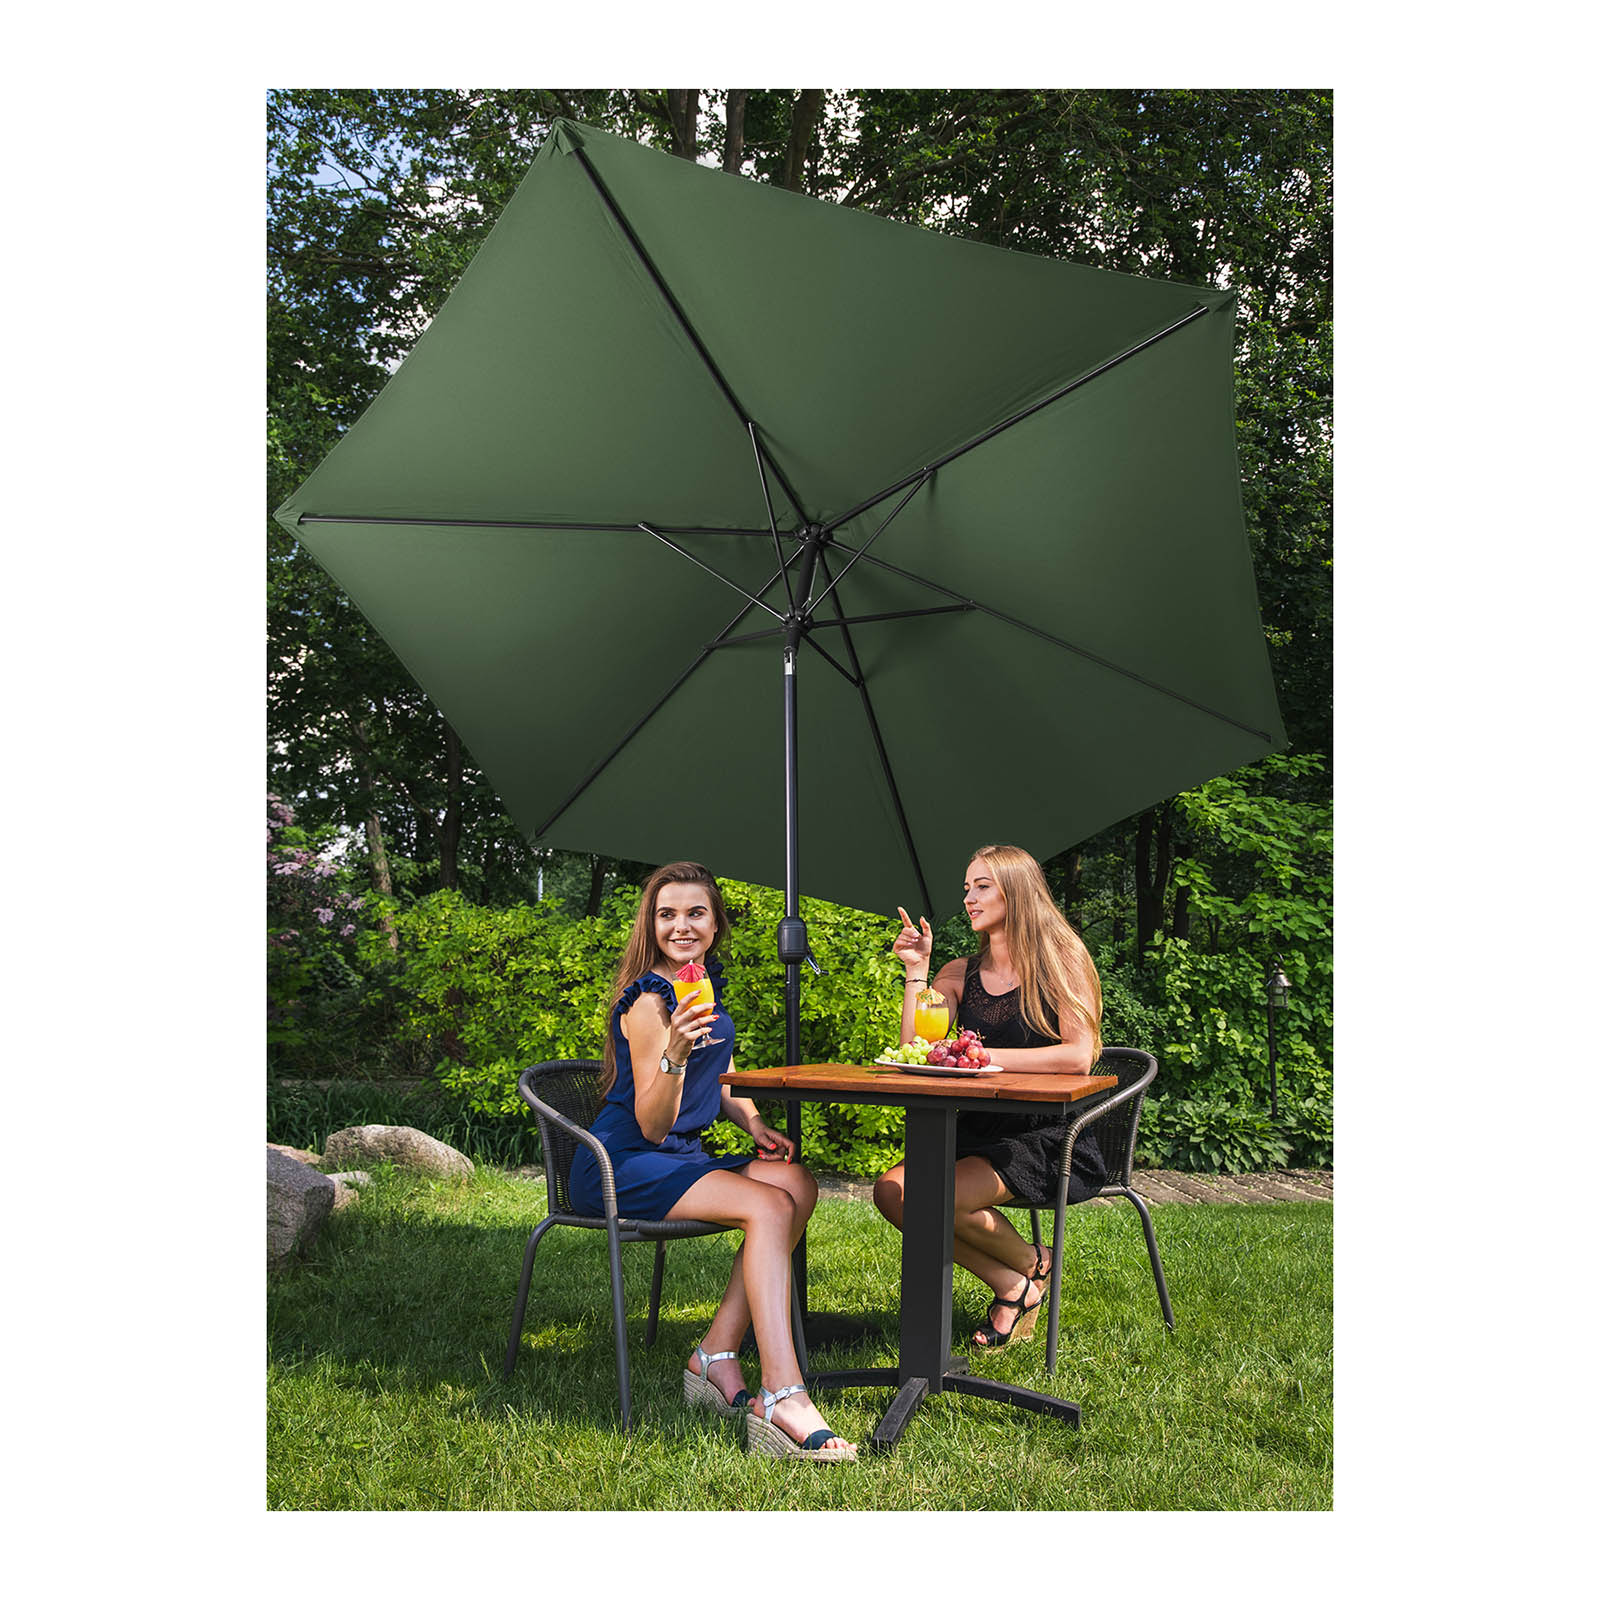 Sonnenschirm groß - grün - sechseckig - Ø 300 cm - neigbar